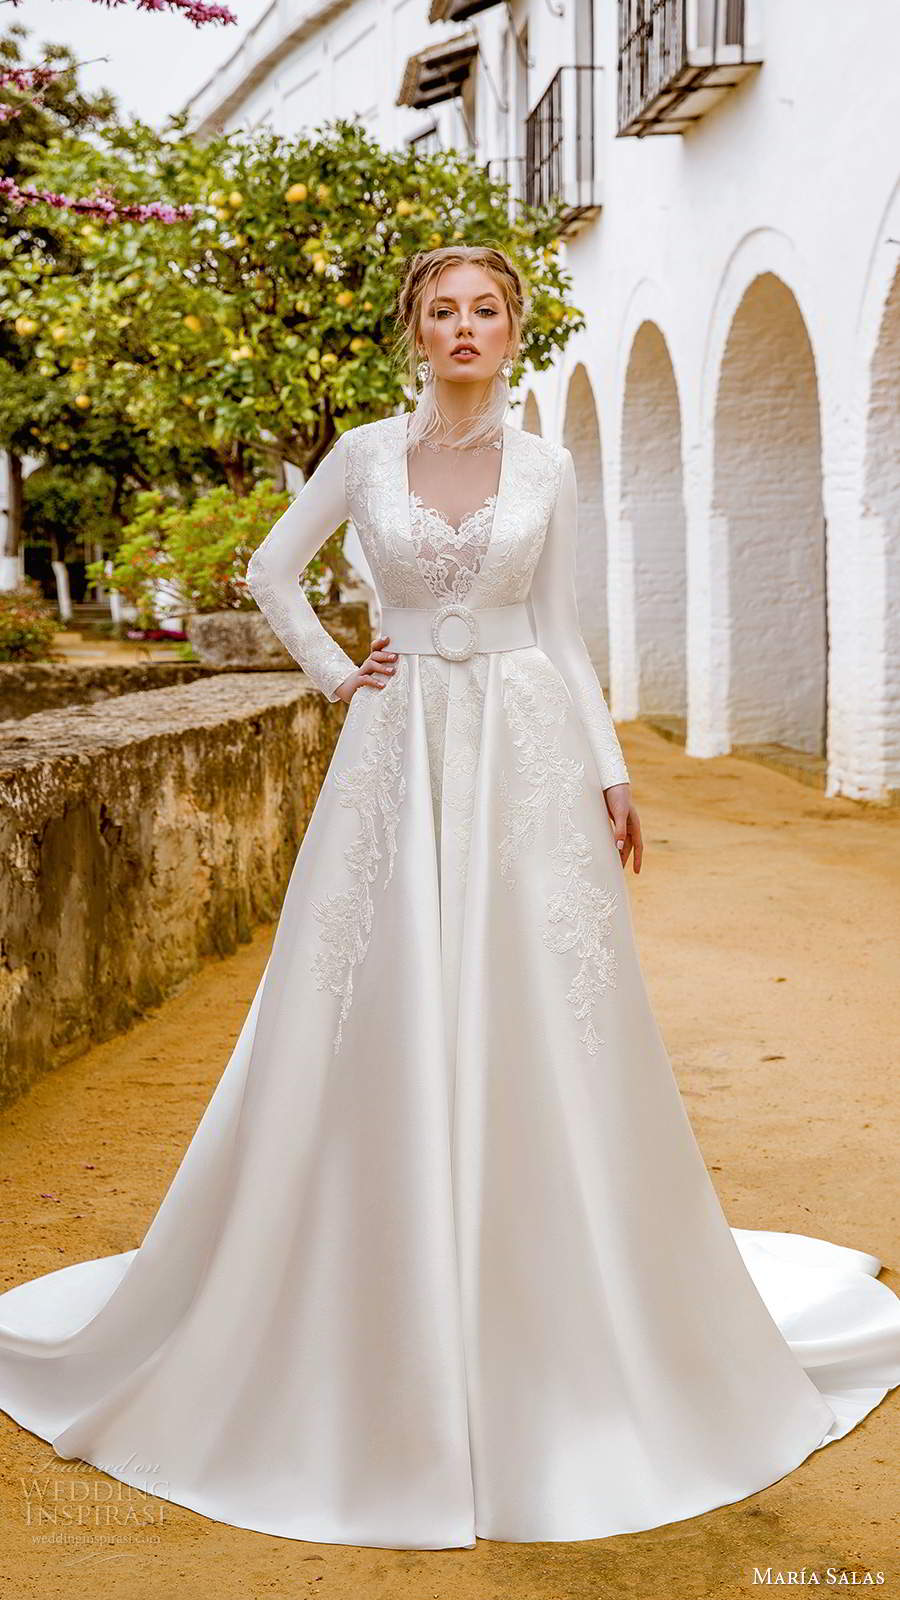 maria salas 2019 bridal sleeveless straps sweetheart neckline fully embellished fit flare sheath lace wedding dress chapel train jacket (13) mv